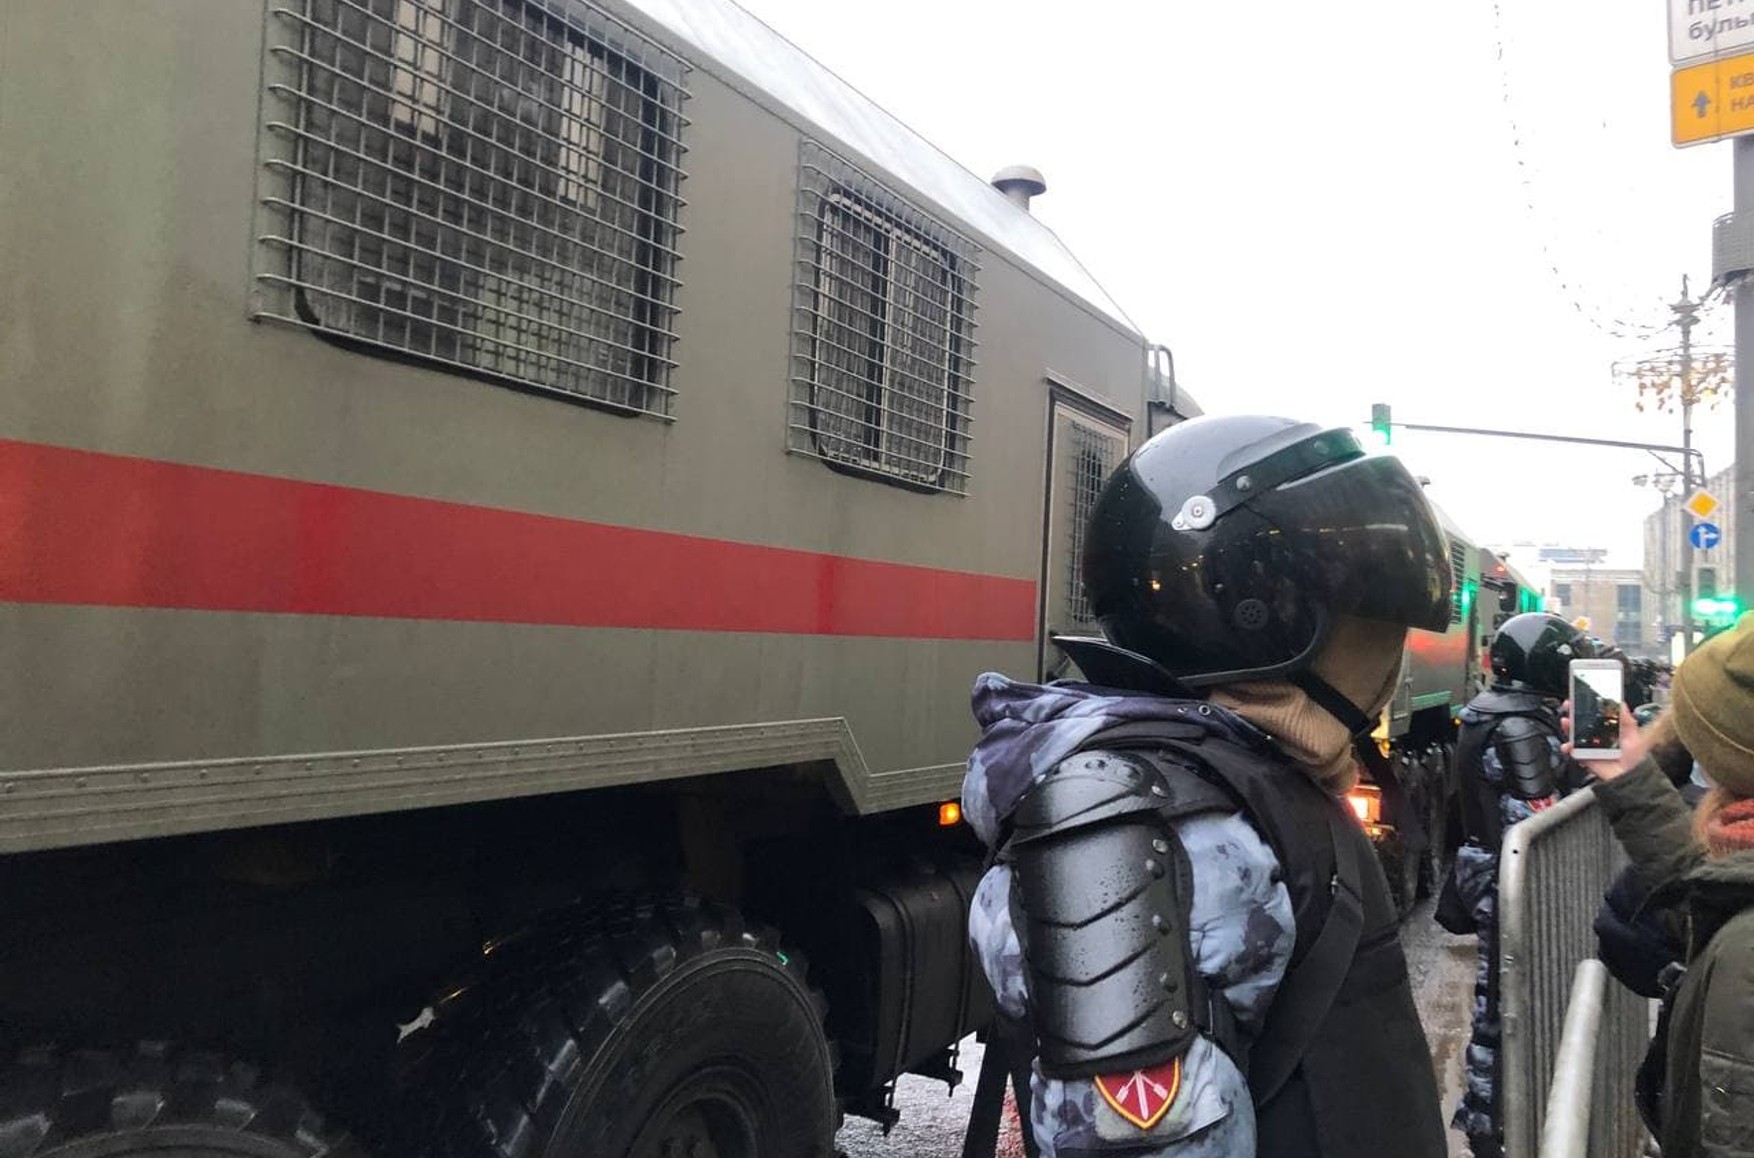 У Москві кілька затриманих на мітингу 23 січня залишили на ніч у автозаку через переповненість спецприймальника